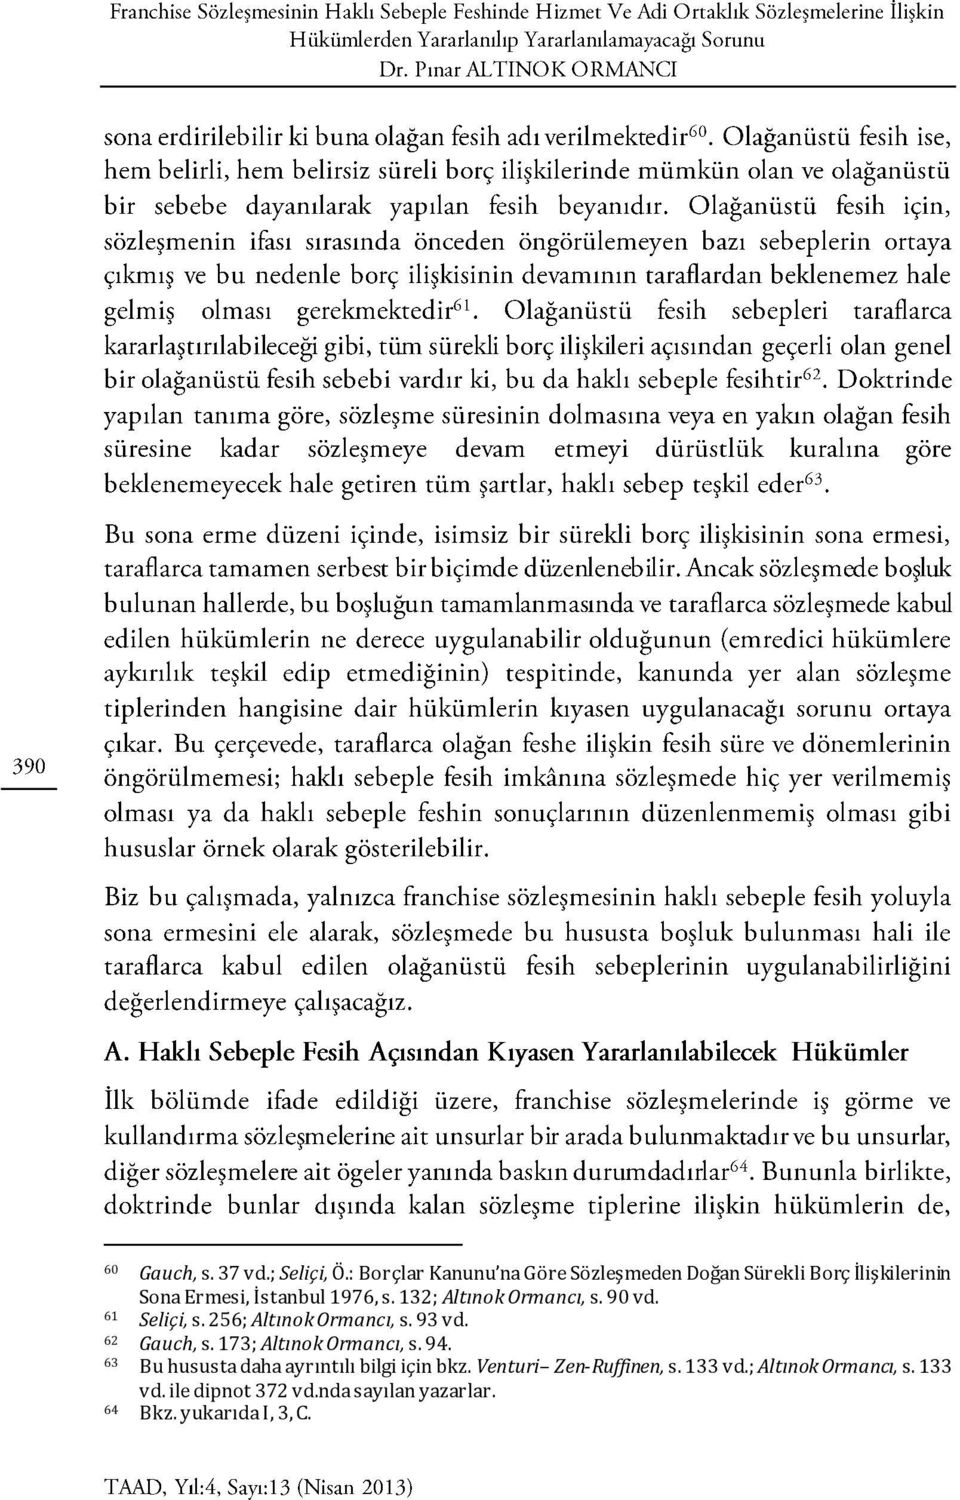 132; Altınok Ormancı, s. 90 vd. 61 Seliçi, s. 256; Altınok Ormancı, s. 93 vd. 62 Gauch, s.